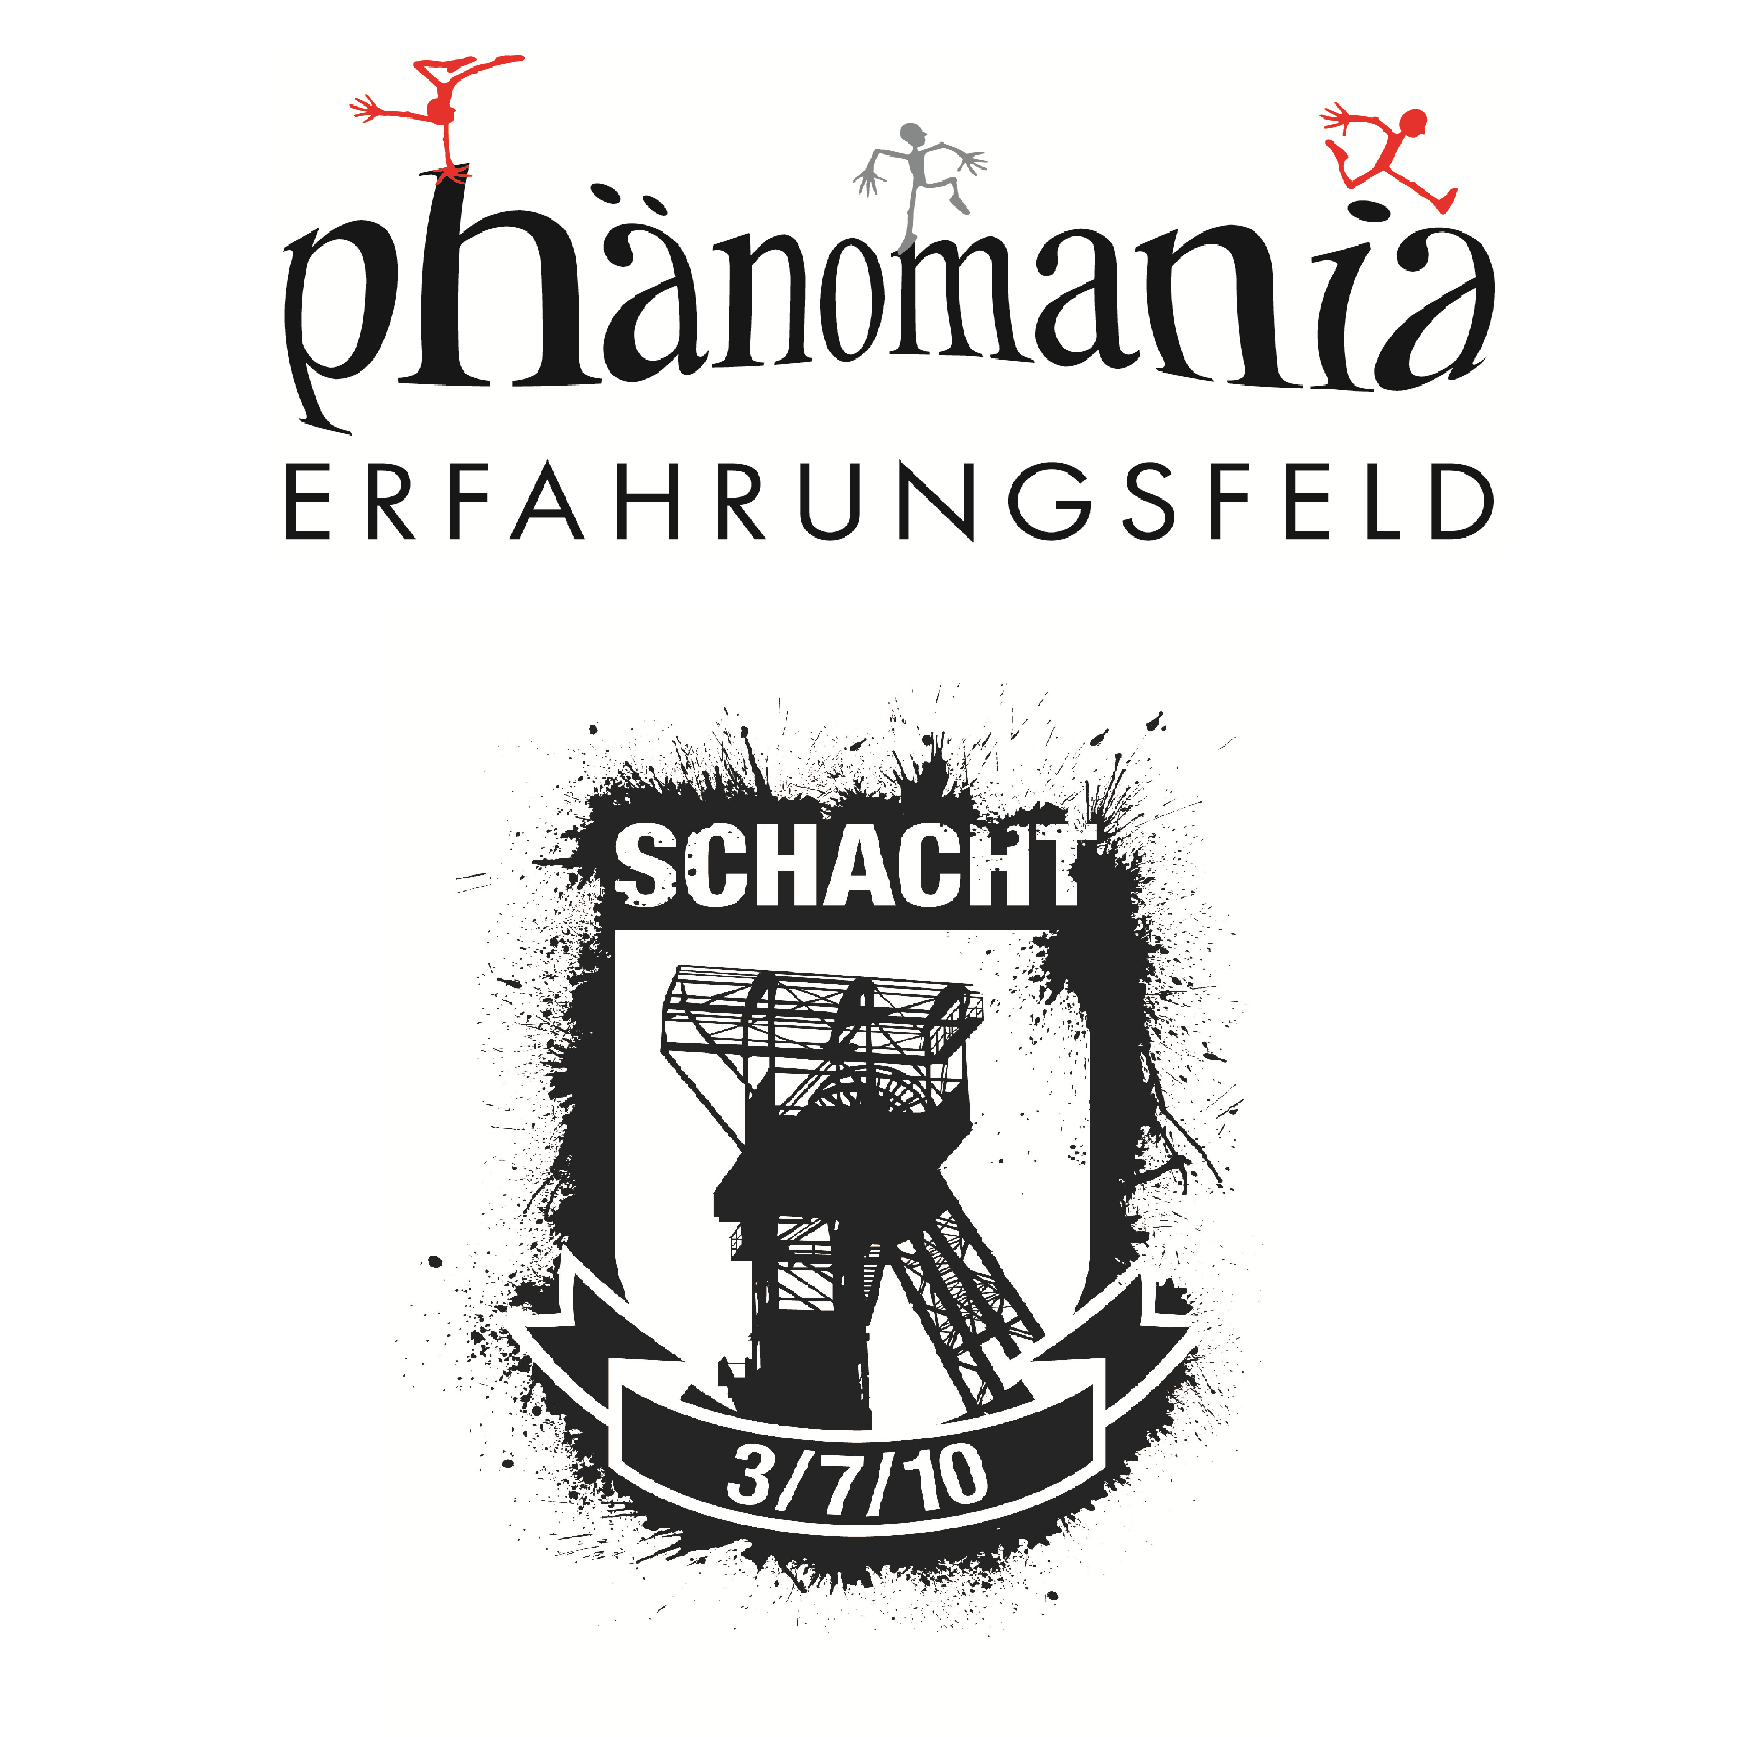 Phänomania Erfahrungsfeld auf Schacht3/7/10 Zeche Zollverein Essen